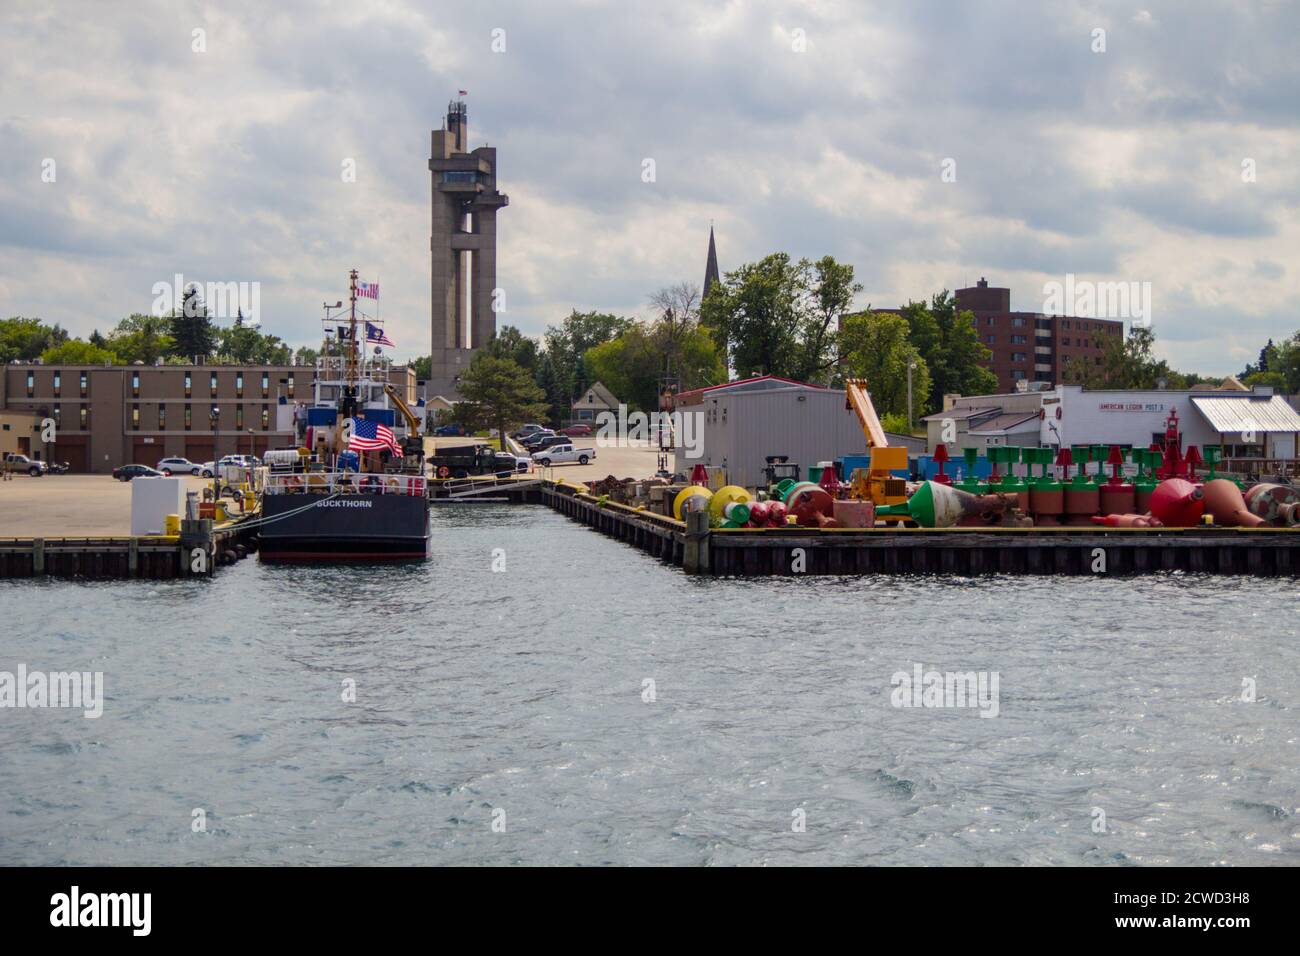 Sault Ste Marie, Michigan, USA - 9. August 2015: Das Stadtzentrum von Sault Ste Marie am Ufer des St Marys River. Stockfoto